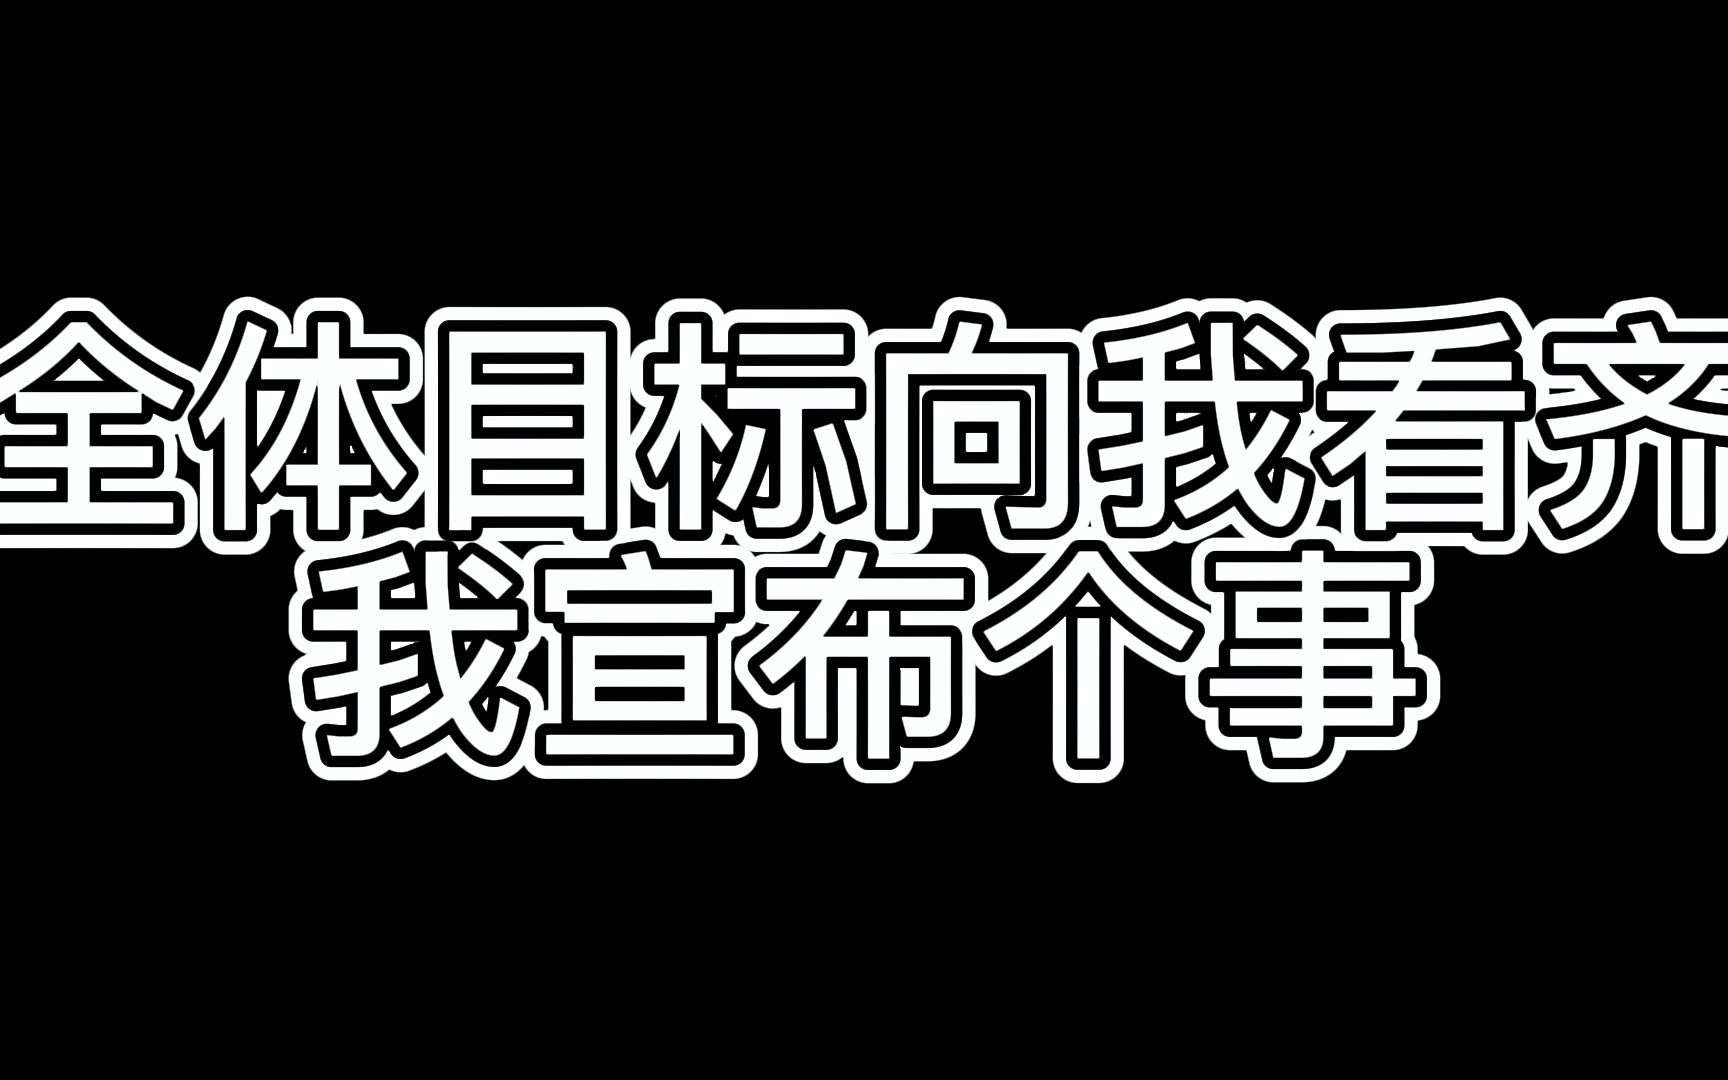 中国风书法汉字字体设计说个正事_站酷海洛_正版图片_视频_字体_音乐素材交易平台_站酷旗下品牌